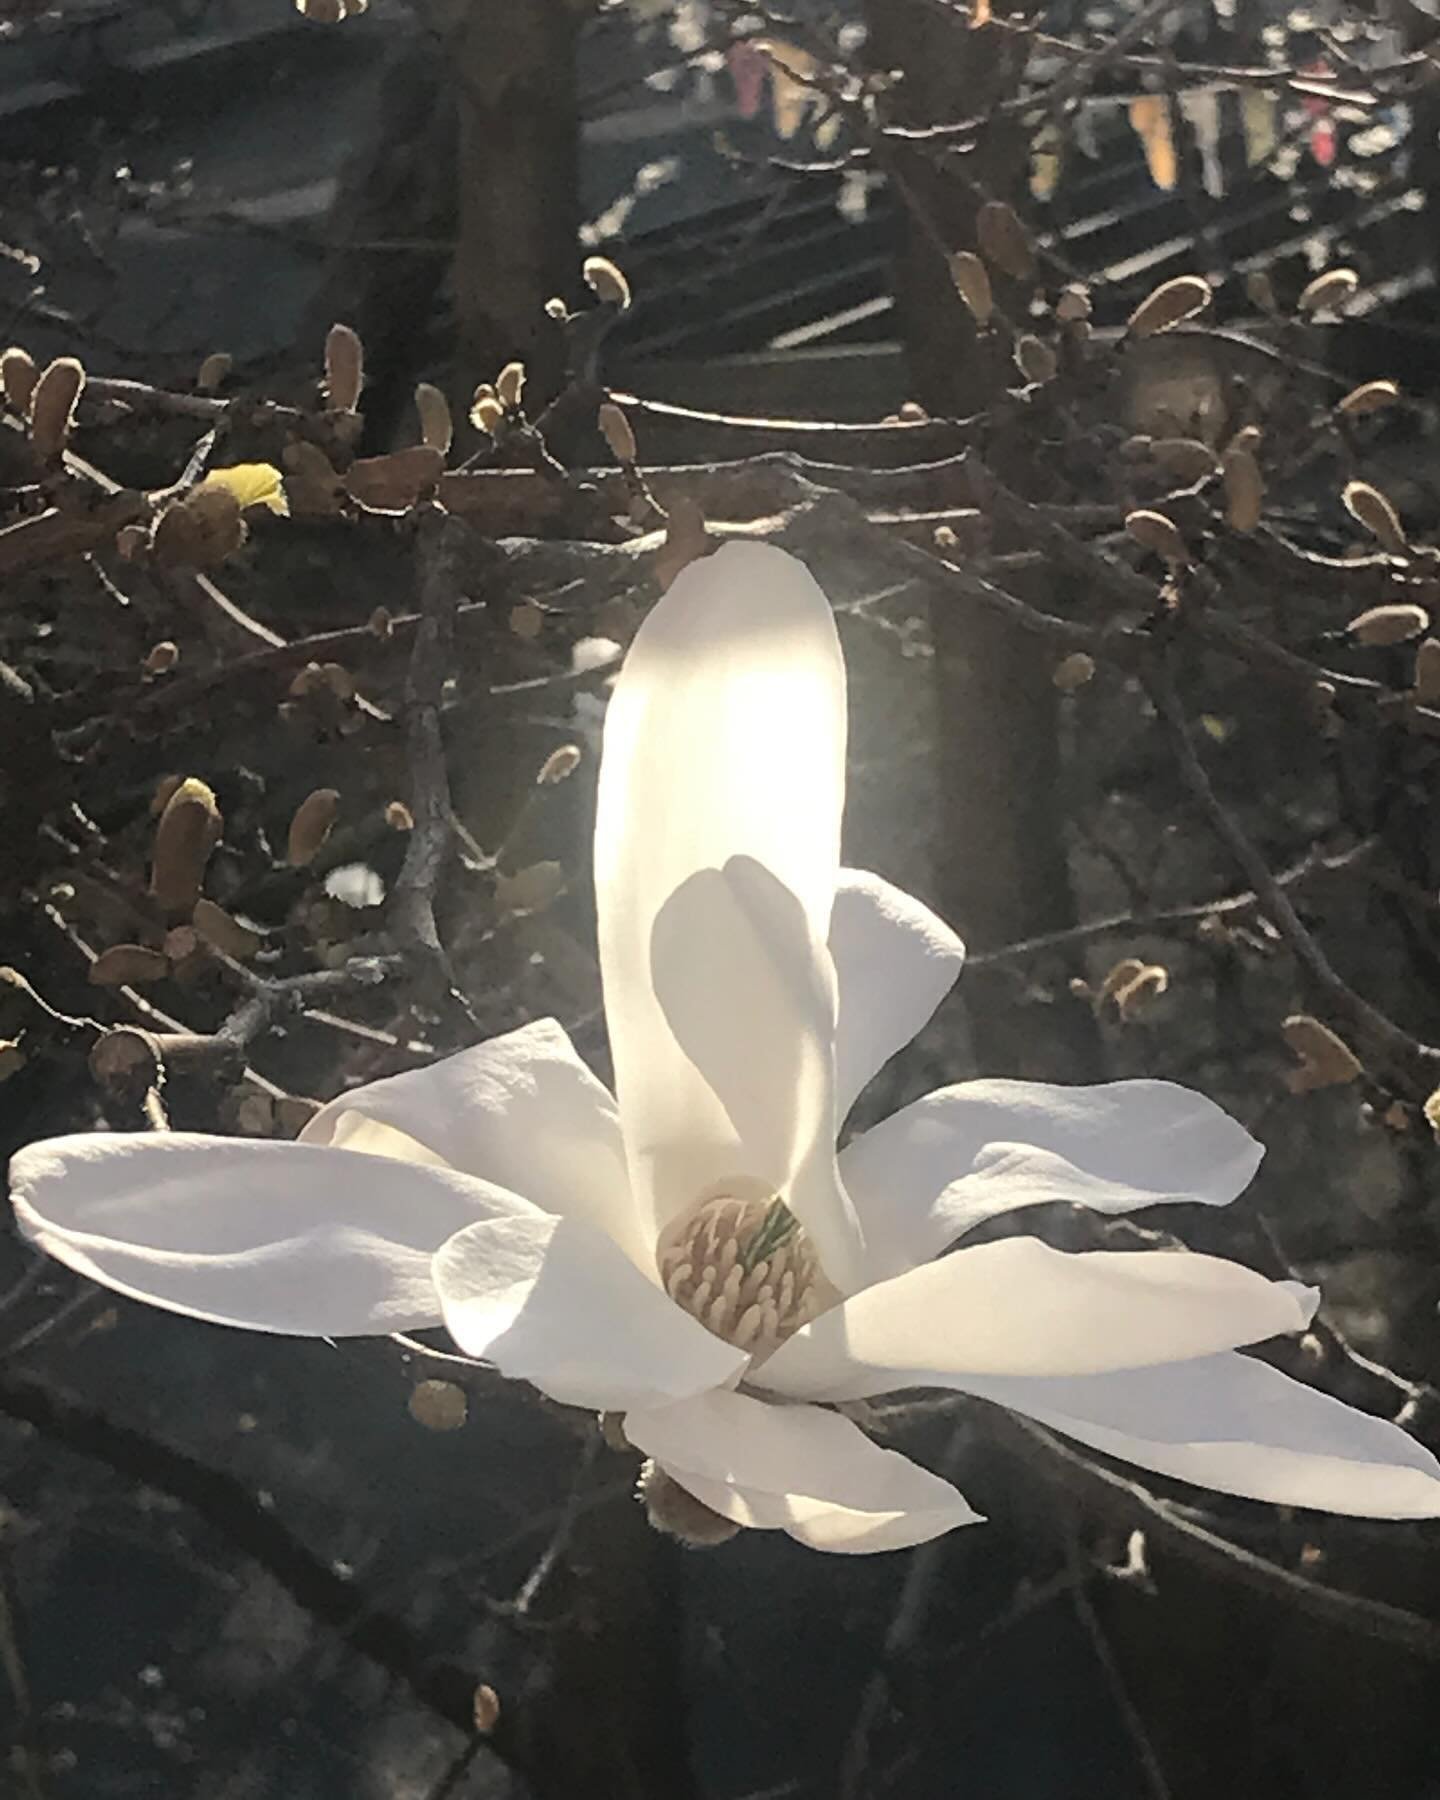 &Aring;r etter &aring;r kommer dette utrolige magnoliatreet ut med sin prakt. Jeg f&aring;r ikke nok av disse vakre blomstene. De minner meg p&aring; l&aelig;ren til en indisk yogamester: V&aelig;r som blomsten. Gi gener&oslash;st av din duft og din 